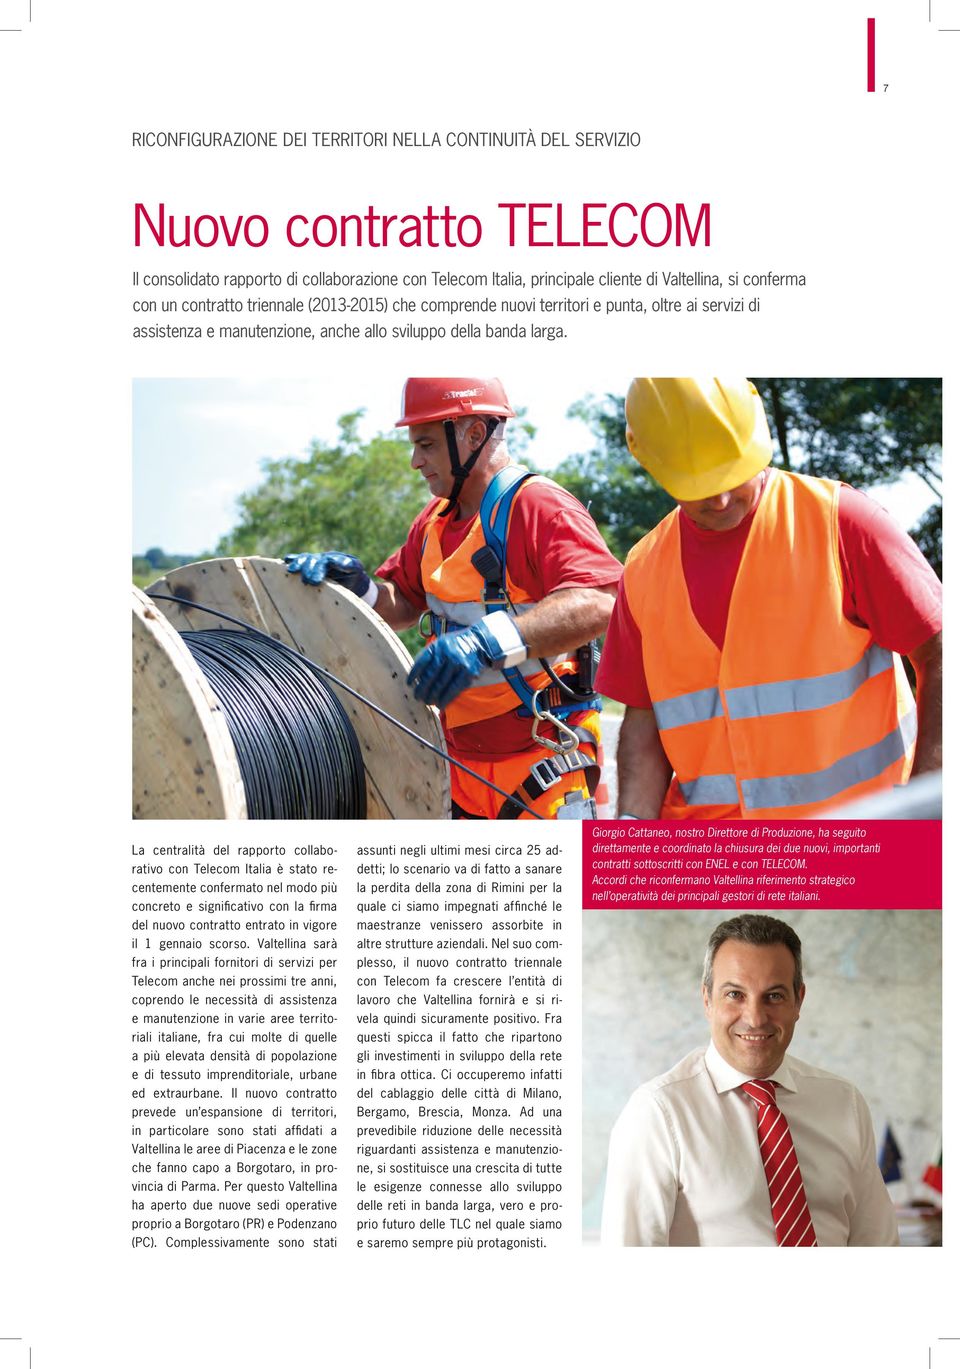 La centralità del rapporto collaborativo con Telecom Italia è stato recentemente confermato nel modo più concreto e significativo con la firma del nuovo contratto entrato in vigore il 1 gennaio